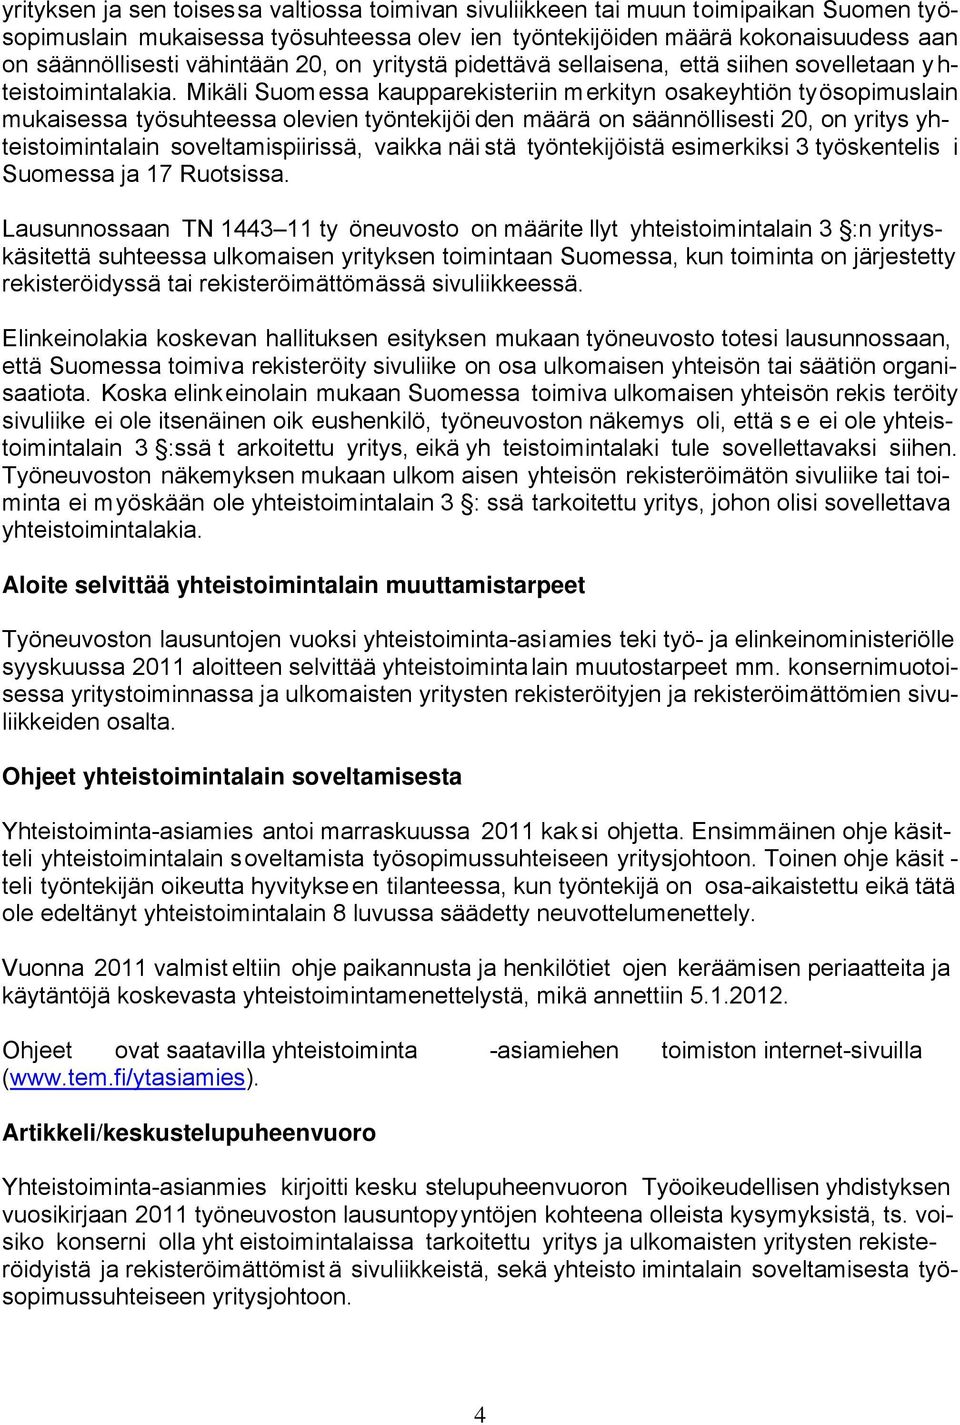 Mikäli Suomessa kaupparekisteriin merkityn osakeyhtiön työsopimuslain mukaisessa työsuhteessa olevien työntekijöi den määrä on säännöllisesti 20, on yritys yhteistoimintalain soveltamispiirissä,